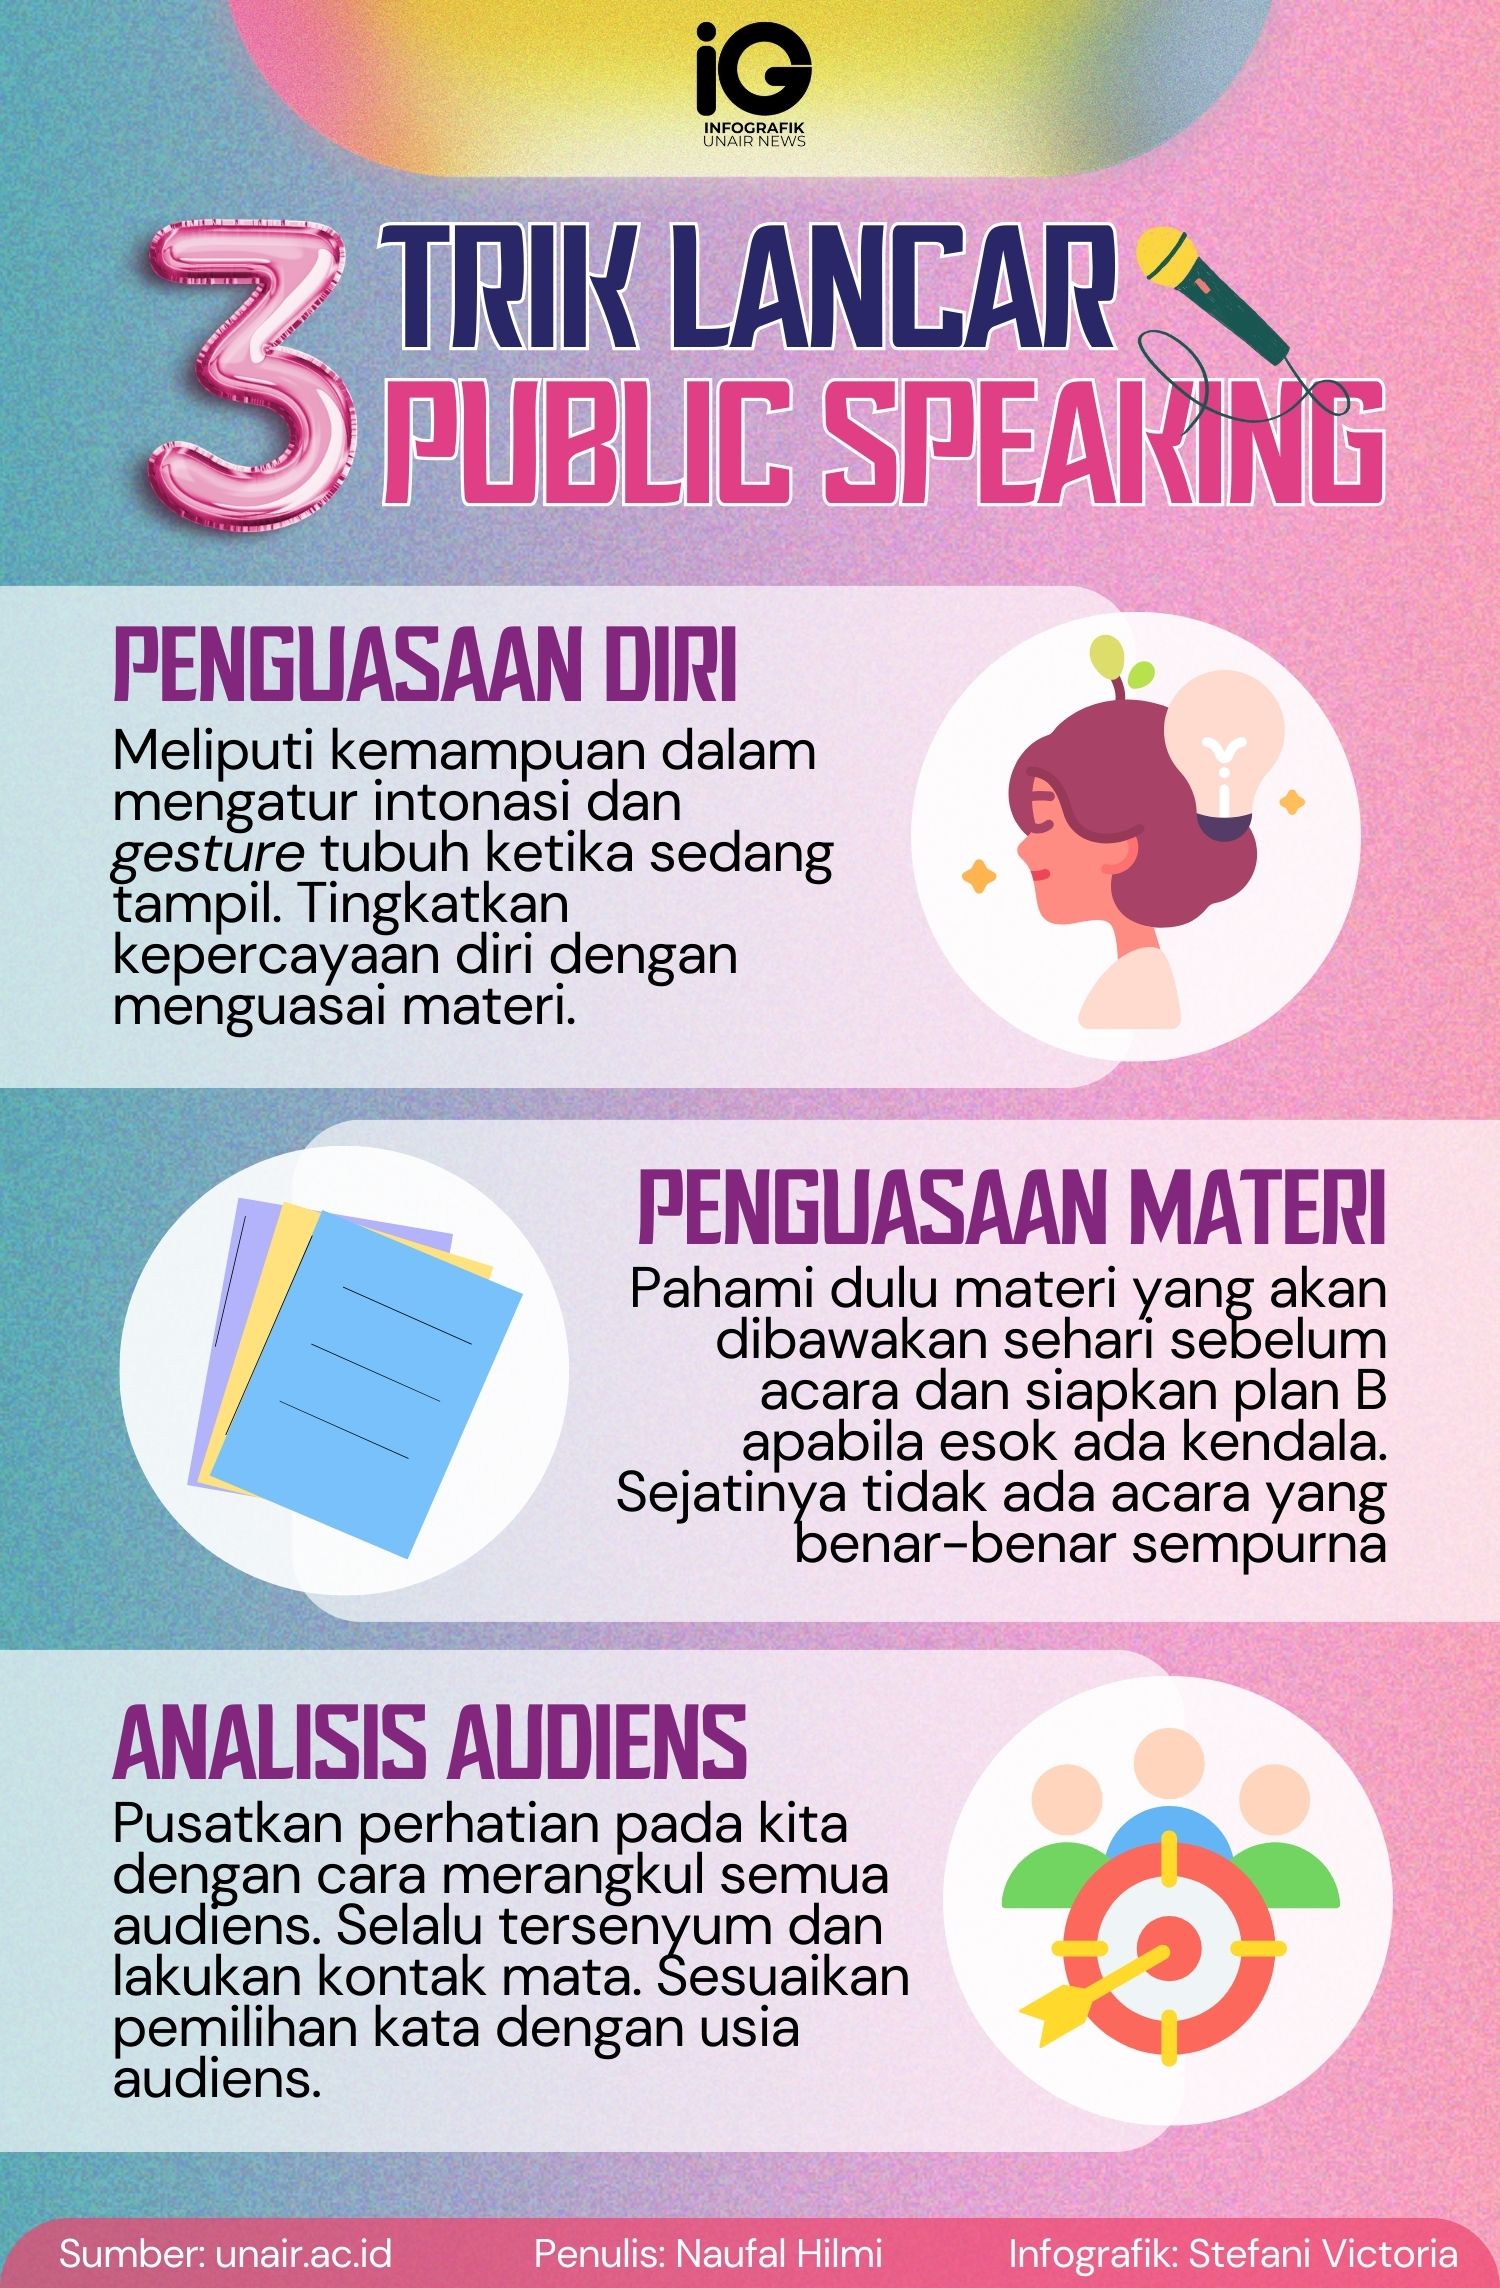 Infografik: Trik Lancar Public Speaking